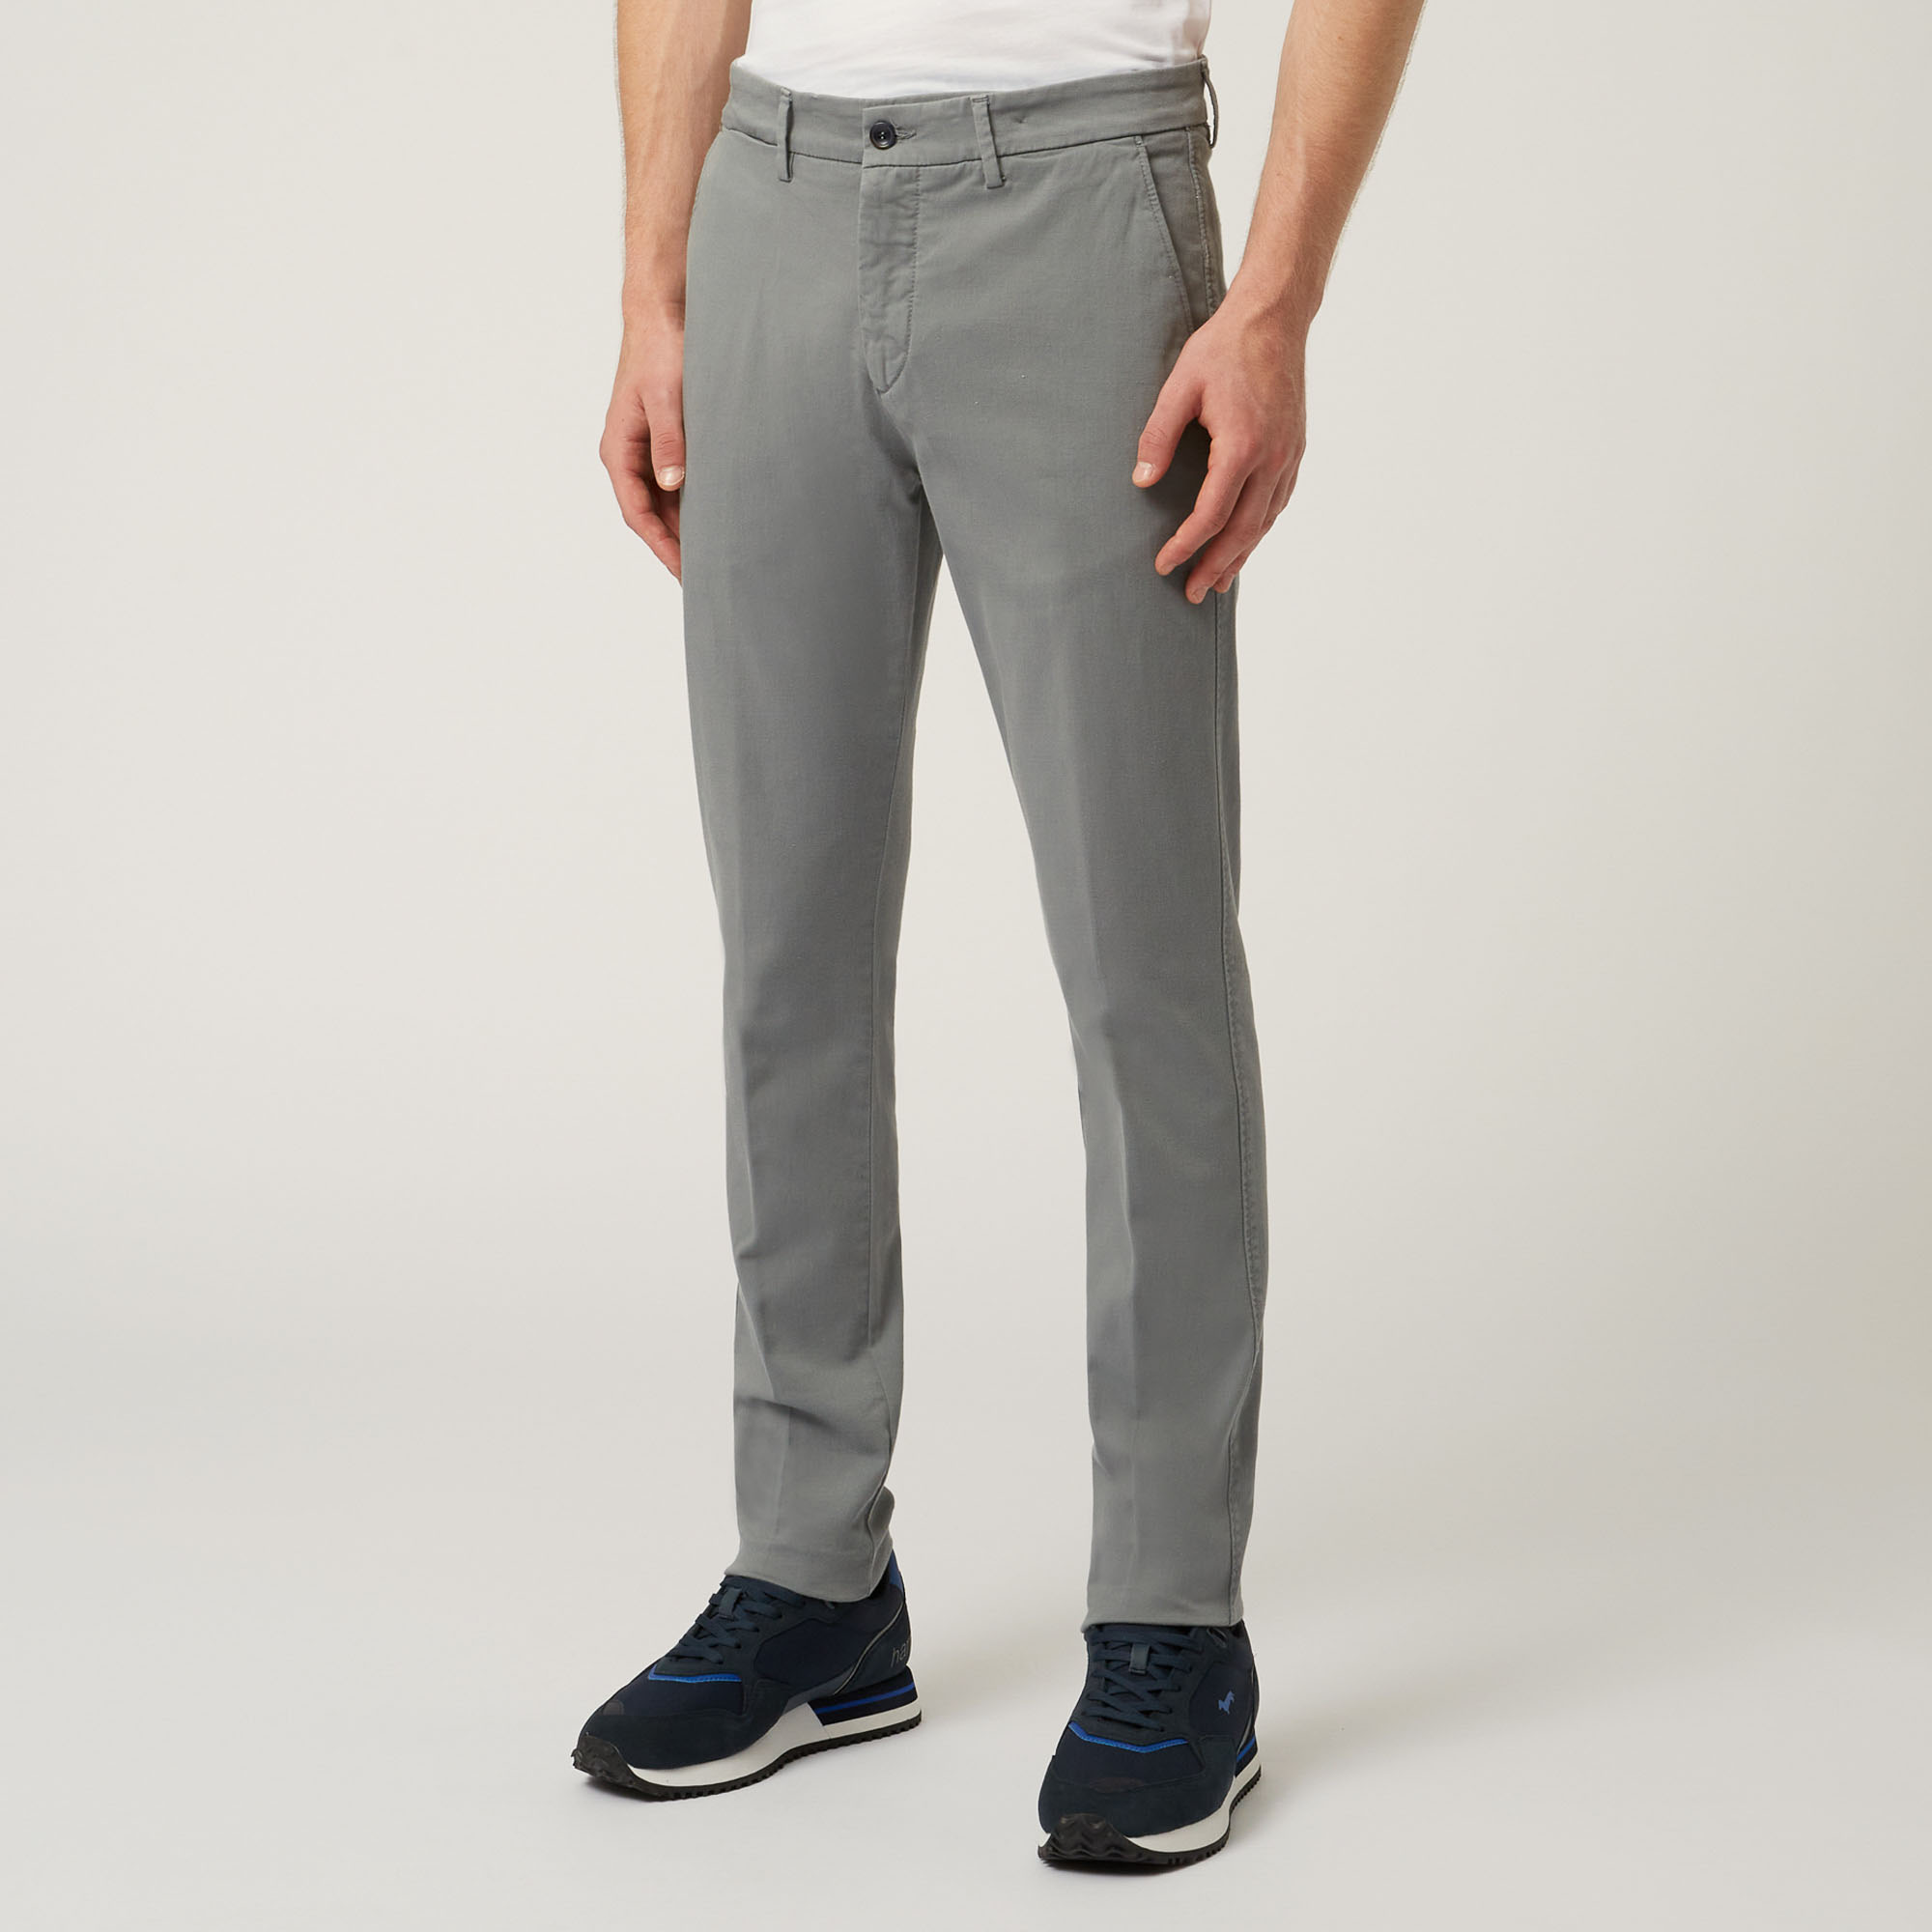 Pantalones Essentials de algodón elástico, Grigio, large